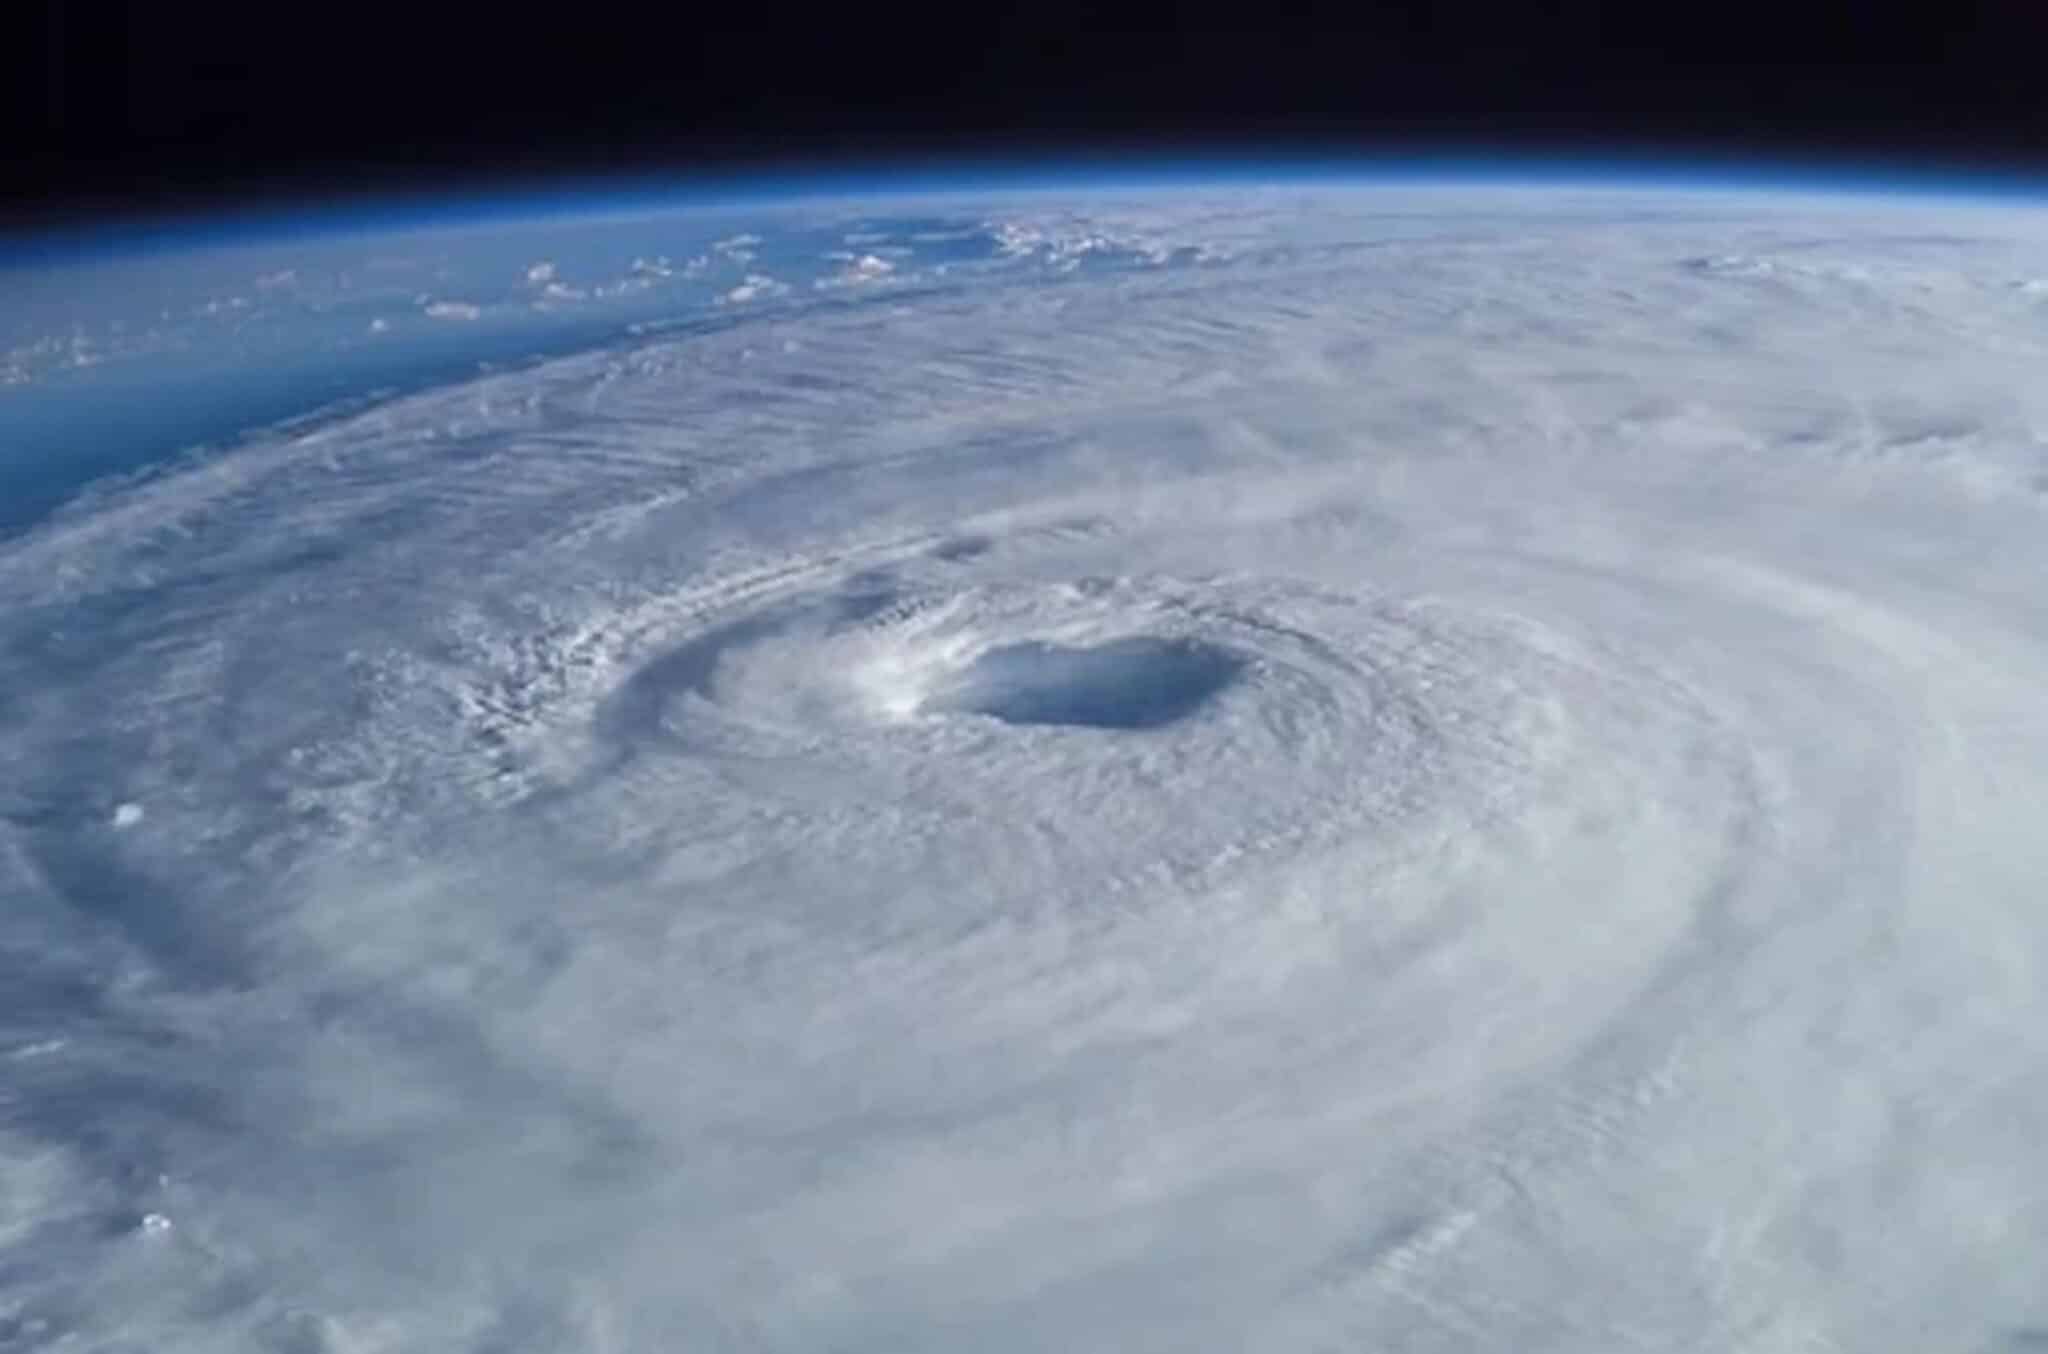 uragani, cicloni, tifoni, venti, Atlantico, riscaldamento globale, clima, temperatura, correlazione, fenomeno, cause, oceano, acqua, umidità, pressione, NOAA, GFDL, studi, precipitazioni, Energy Close-up Engineering